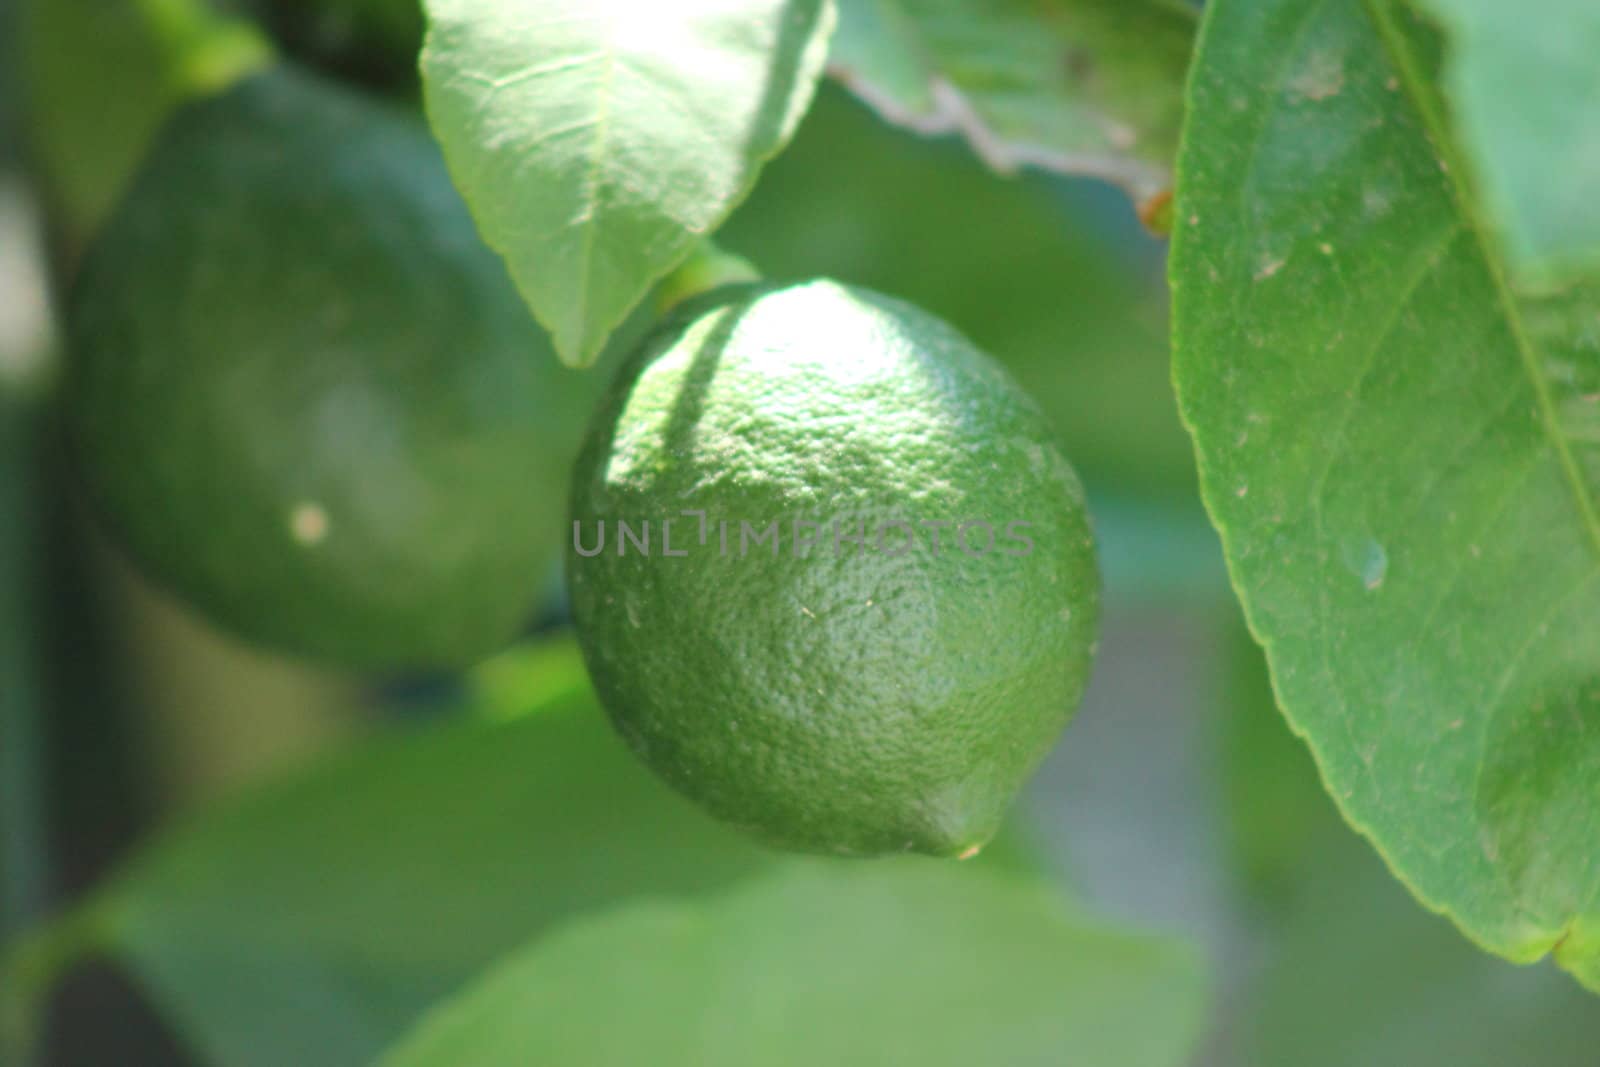 Growing Lemons by abhbah05